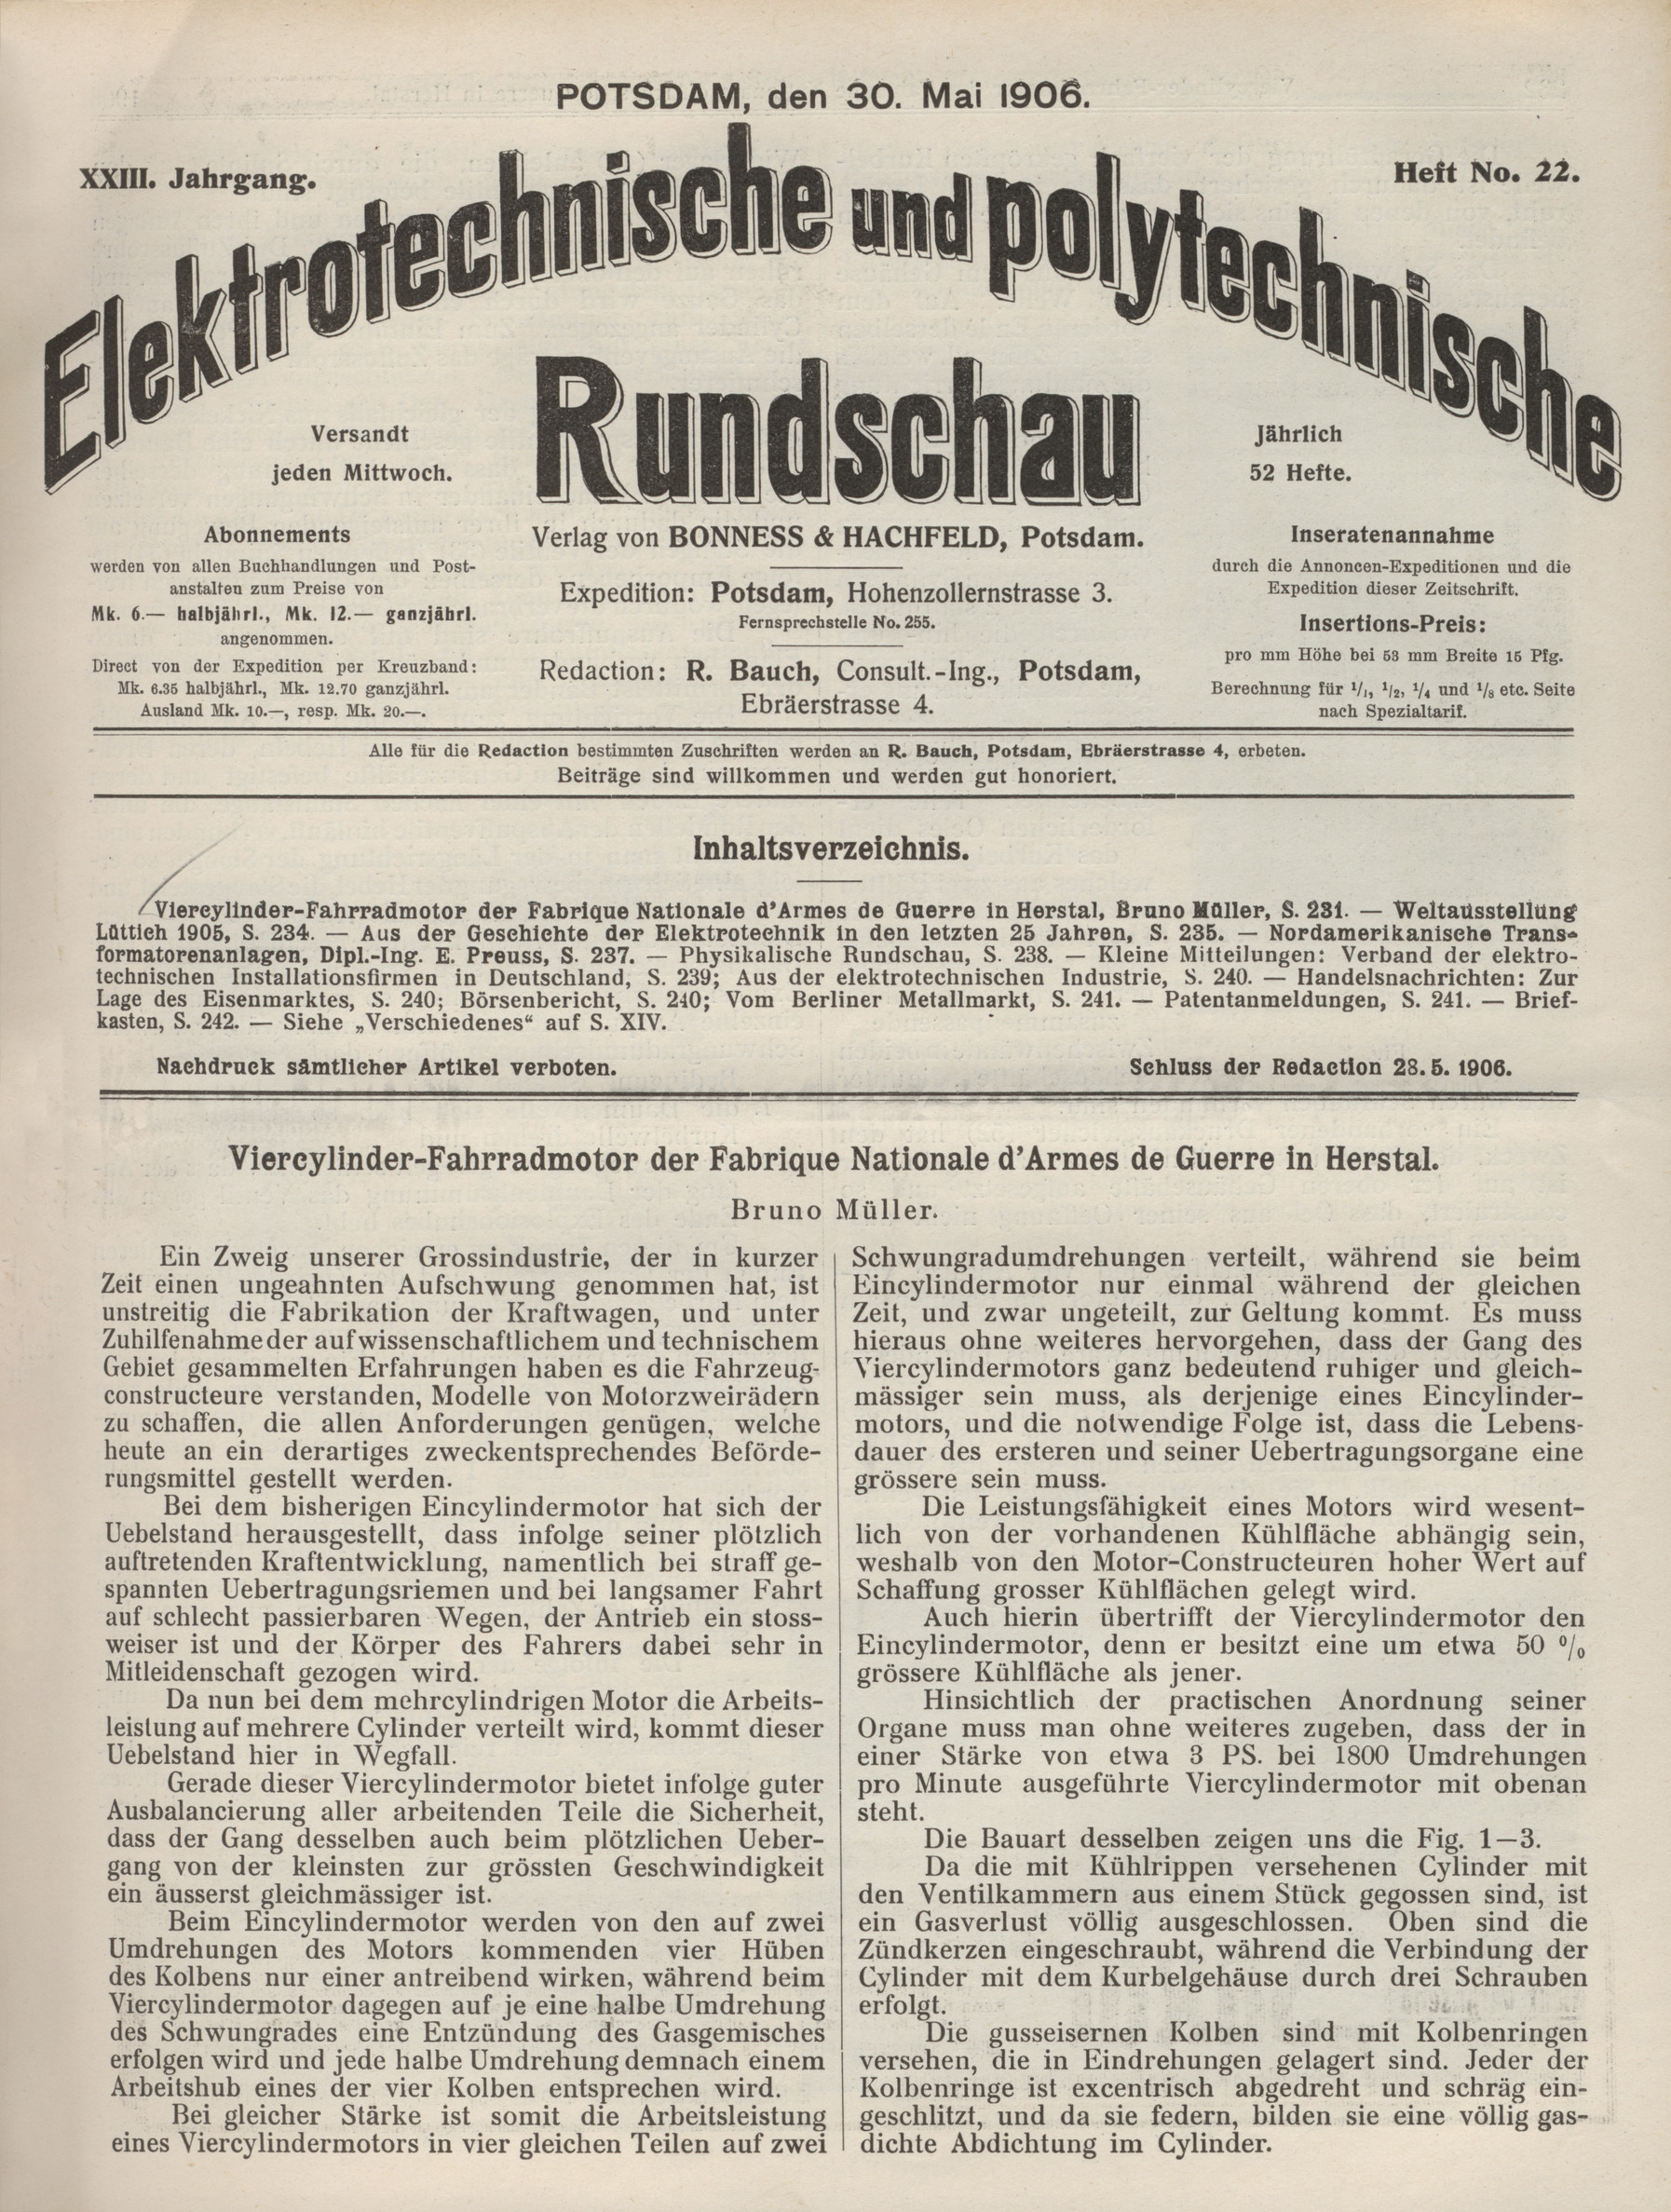 Elektrotechnische und polytechnische Rundschau, XXIII. Jahrgang, Heft No. 22